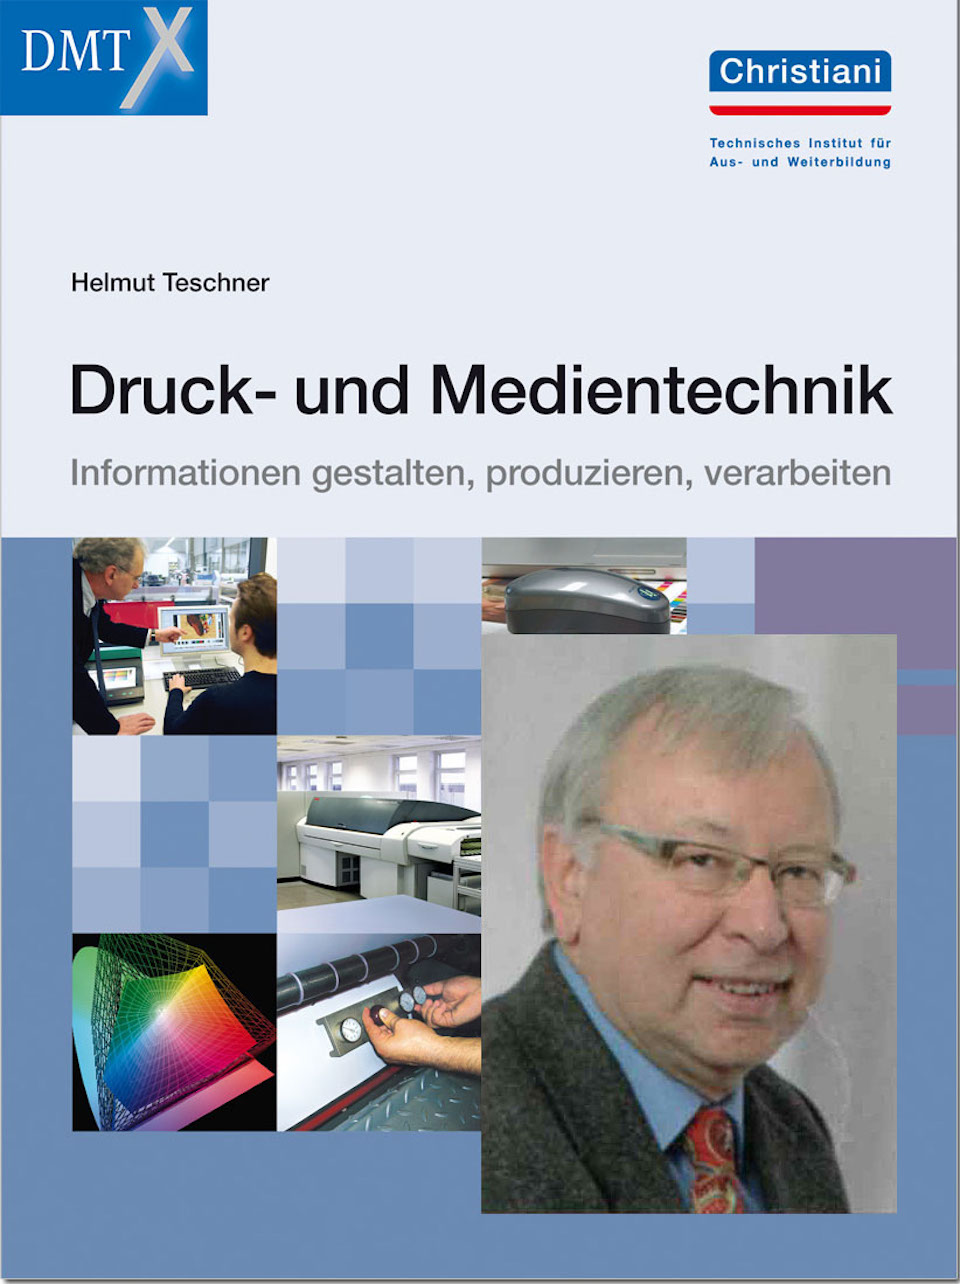 Fachschule Druck- und Medientechnik – Erster Online-Vortrag in der DMT/X-Reihe